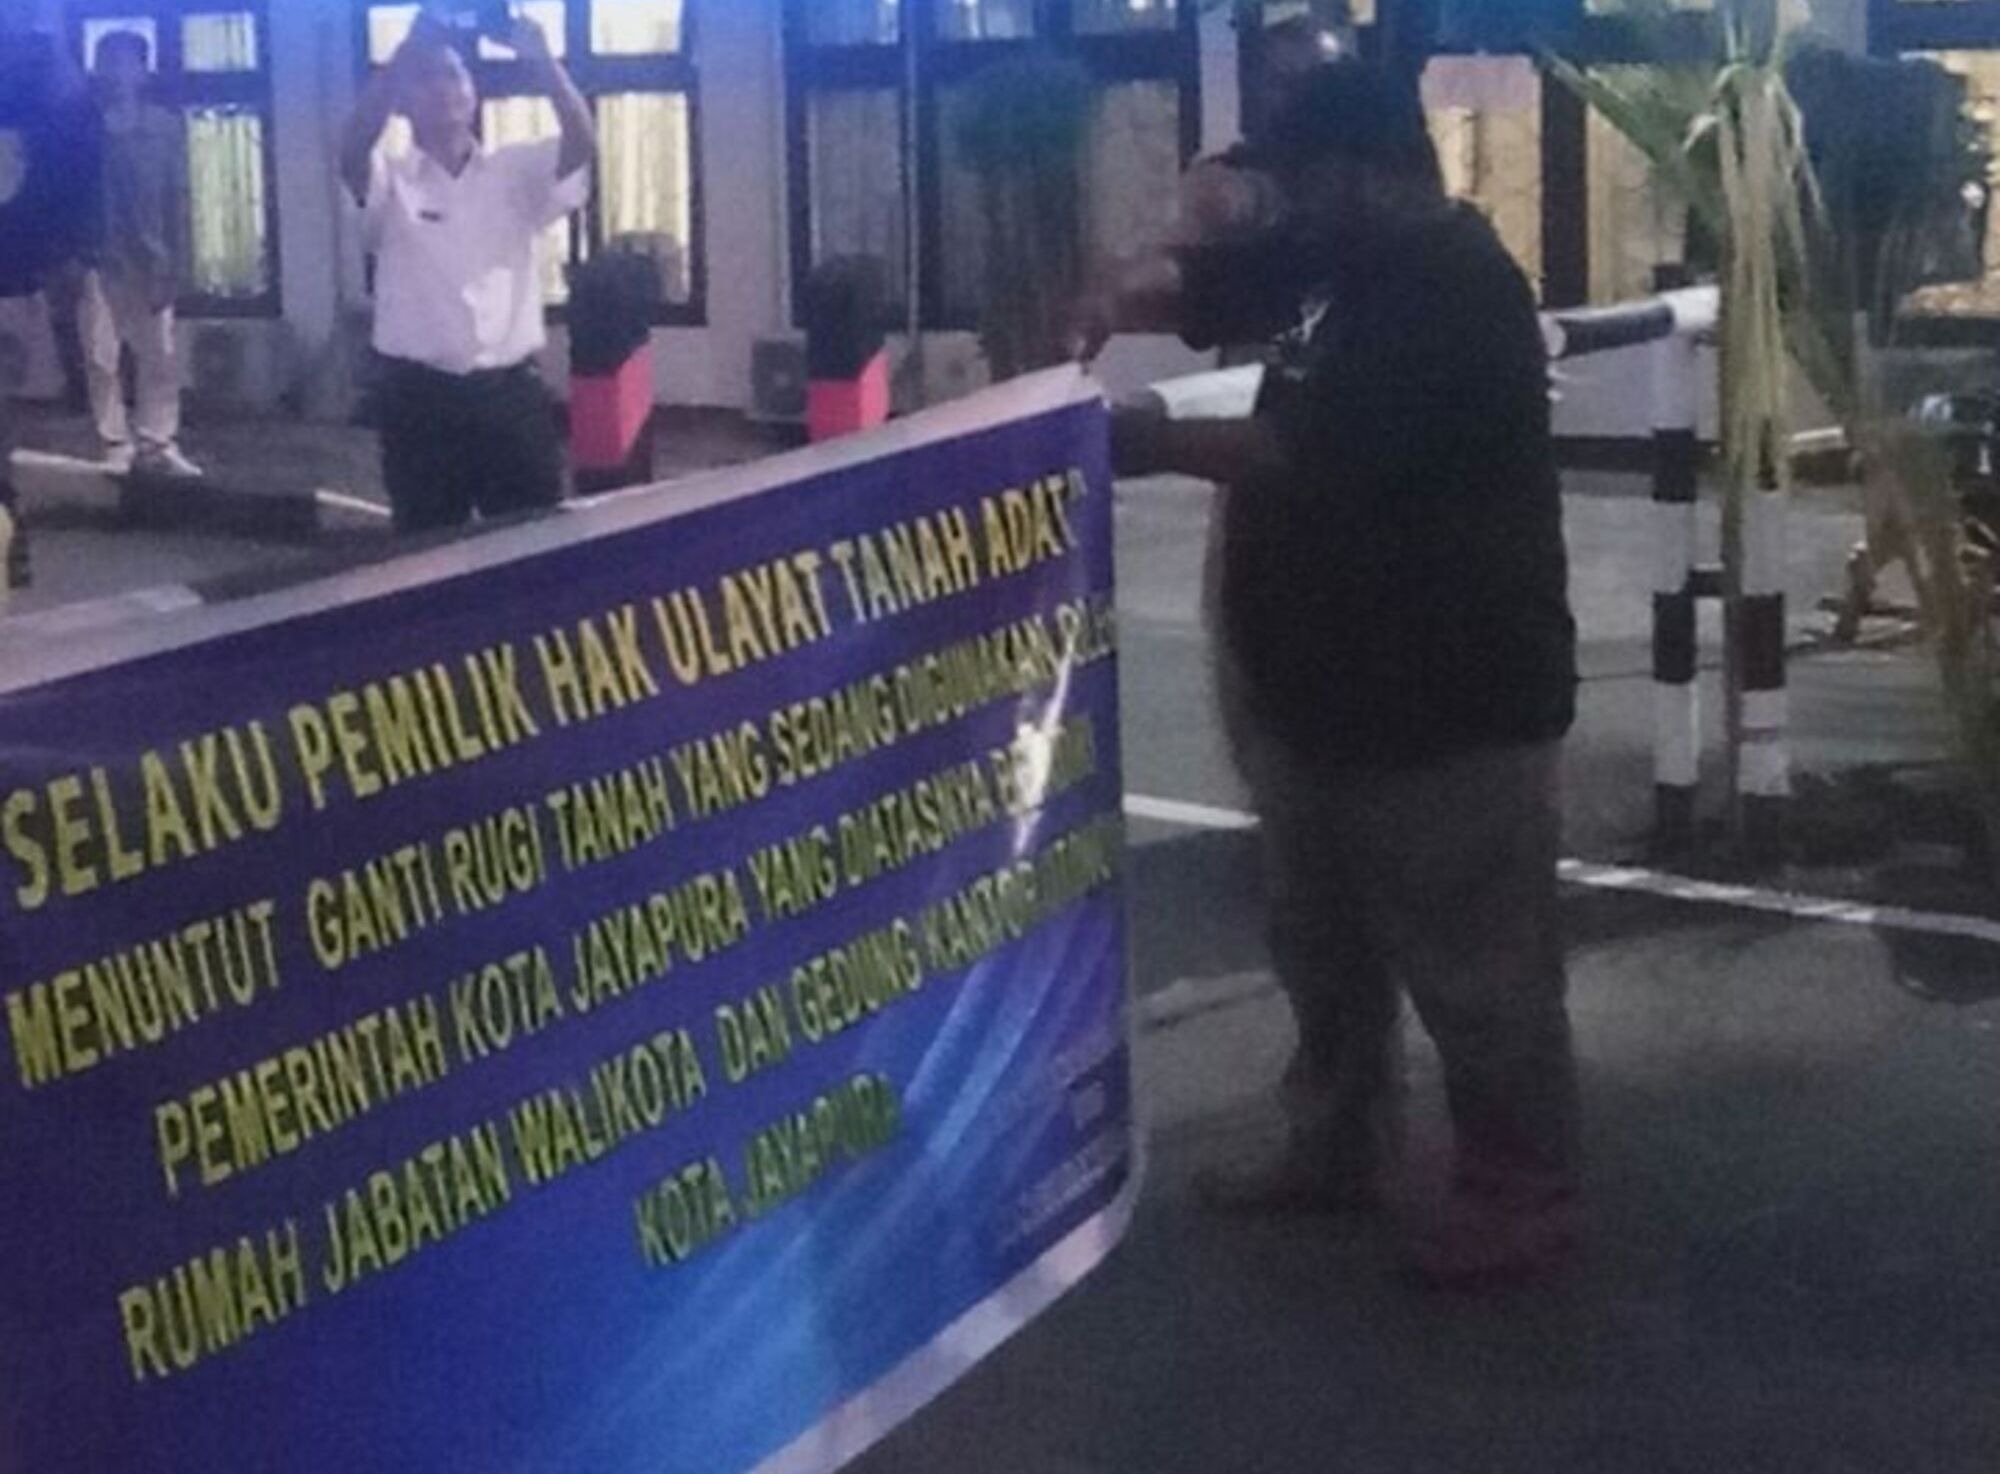 Pemilik hak ulayat membuka palang Kantor Wali Kota Jayapura